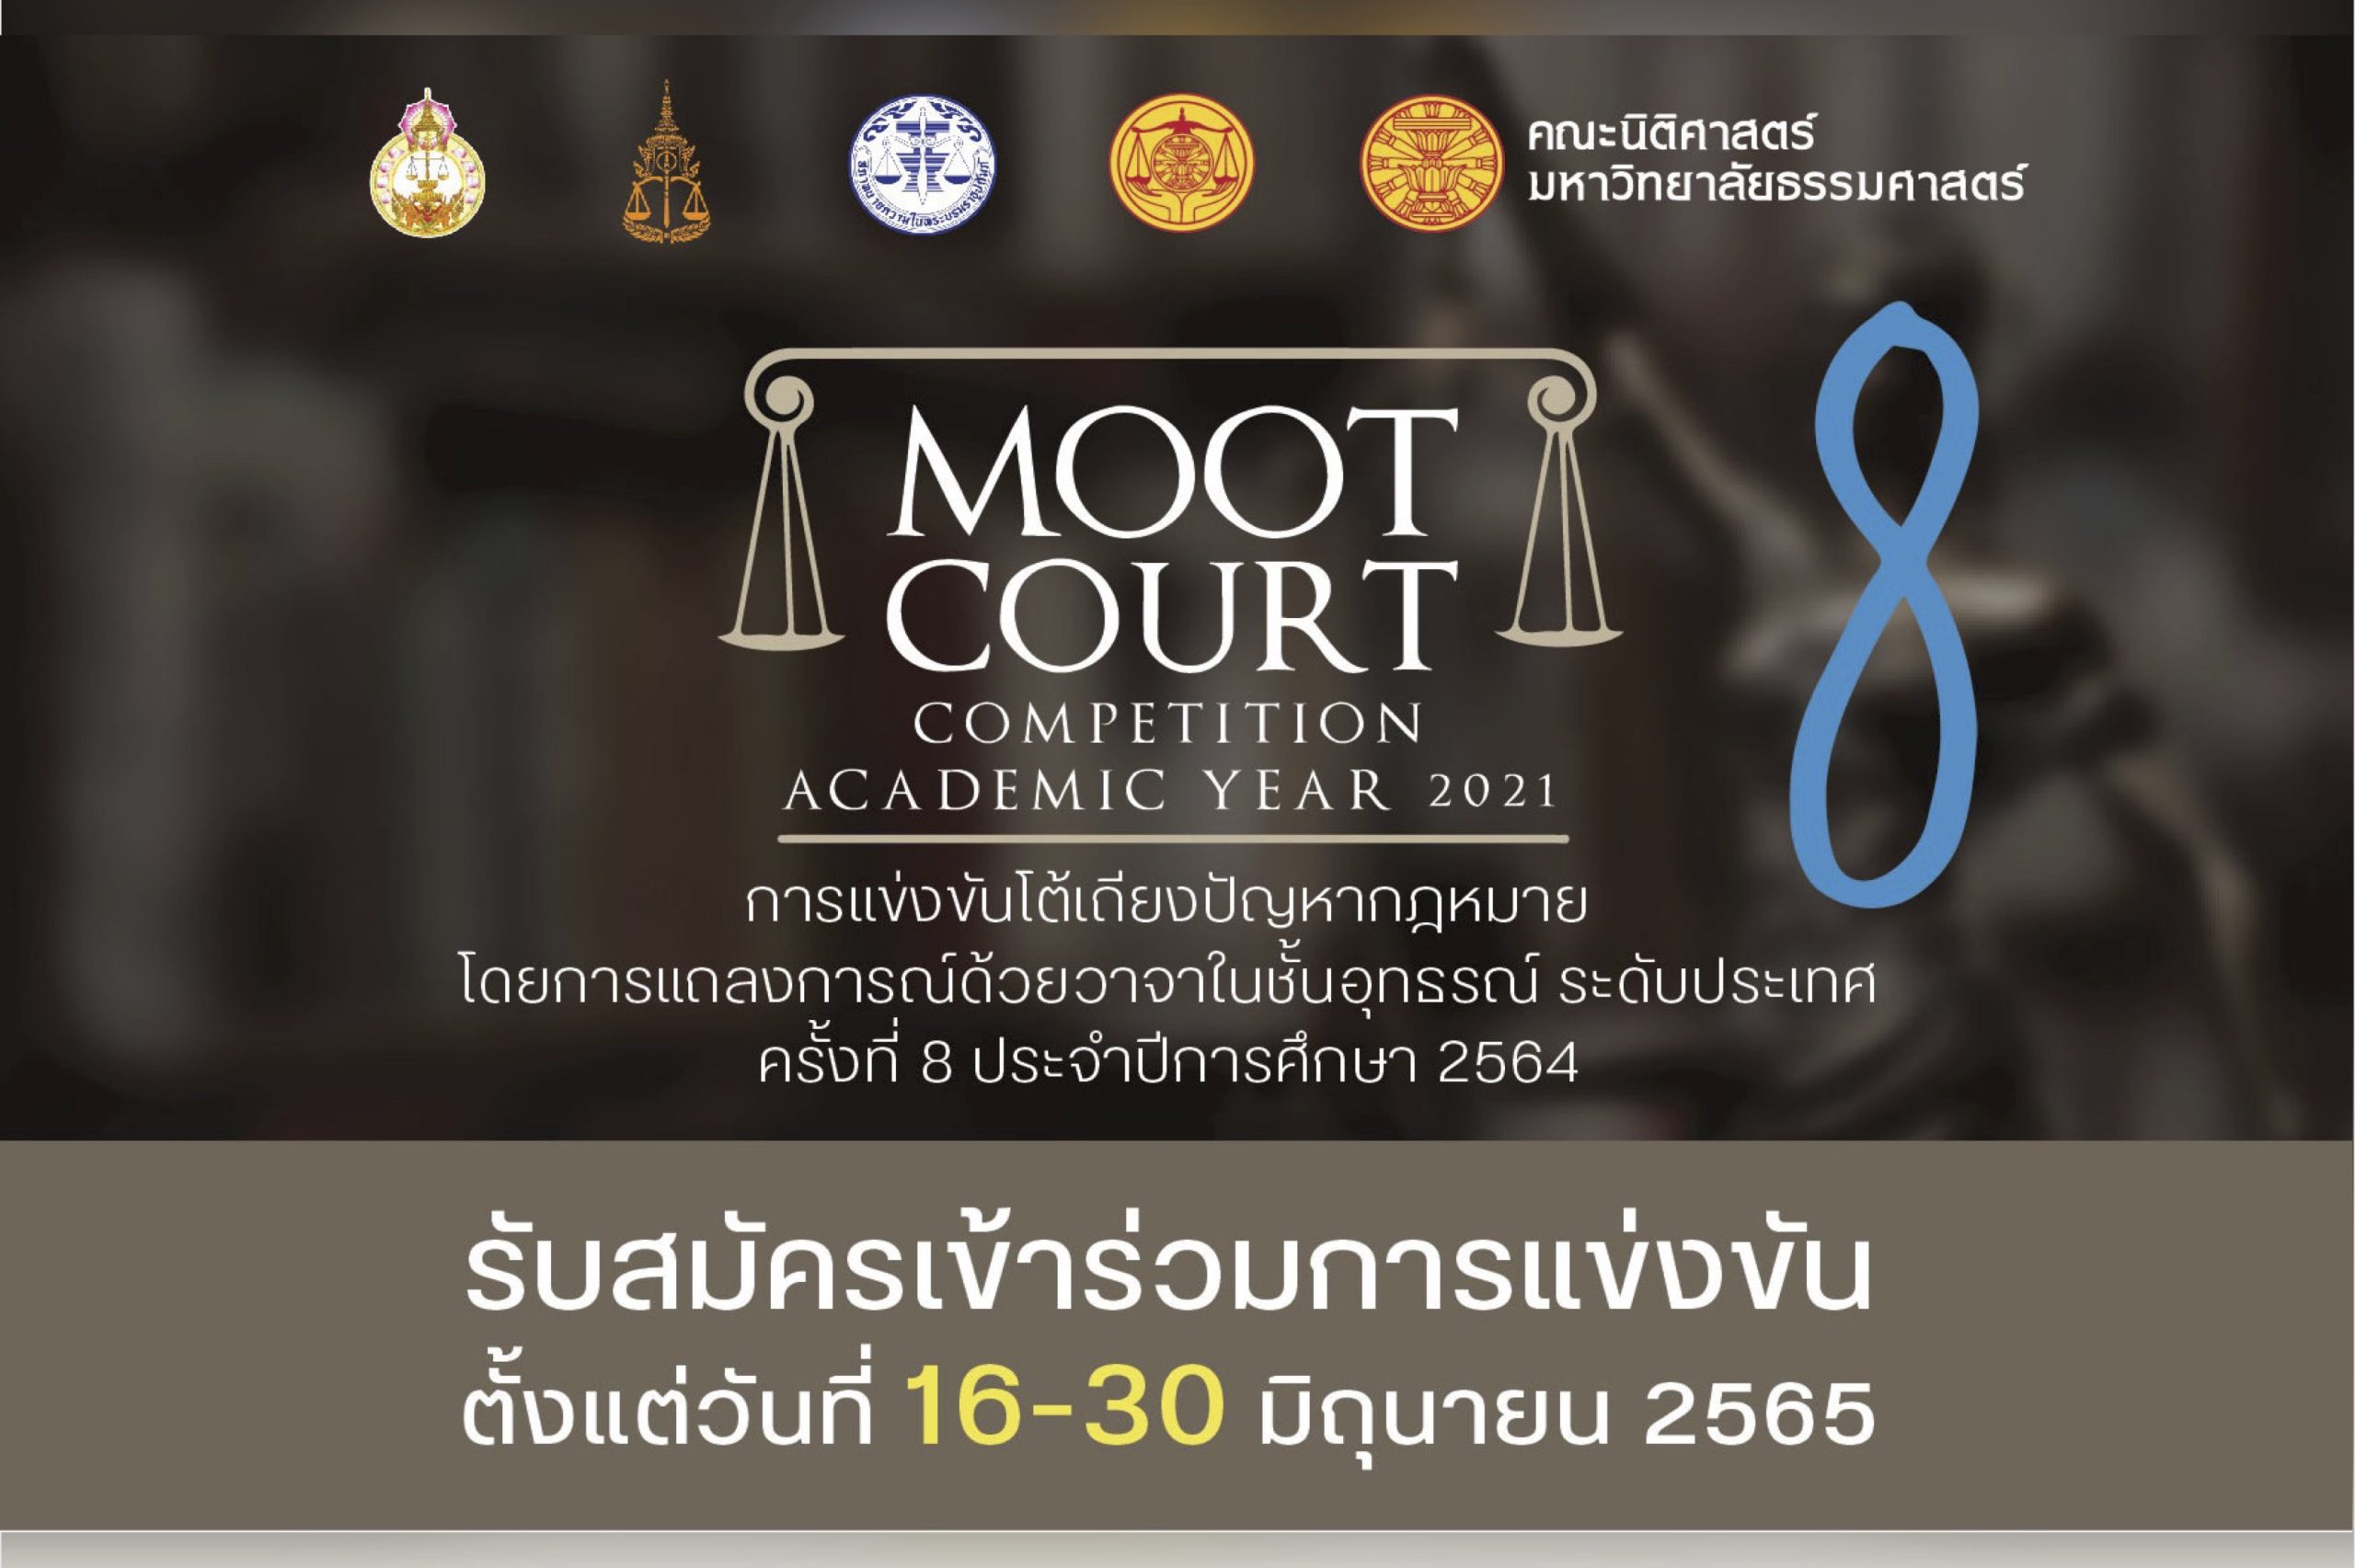 รับสมัครนักศึกษาคณะนิติศาสตร์ทุกมหาวิทยาลัยเข้าร่วมการแข่งขันโต้เถียงปัญหากฎหมายโดยการแถลงการณ์ด้วยวาจาในชั้นอุทธรณ์ ระดับประเทศ ครั้งที่ 8 ประจำปีการศึกษา 2564 (Moot Court Competition Academic Year 2021)